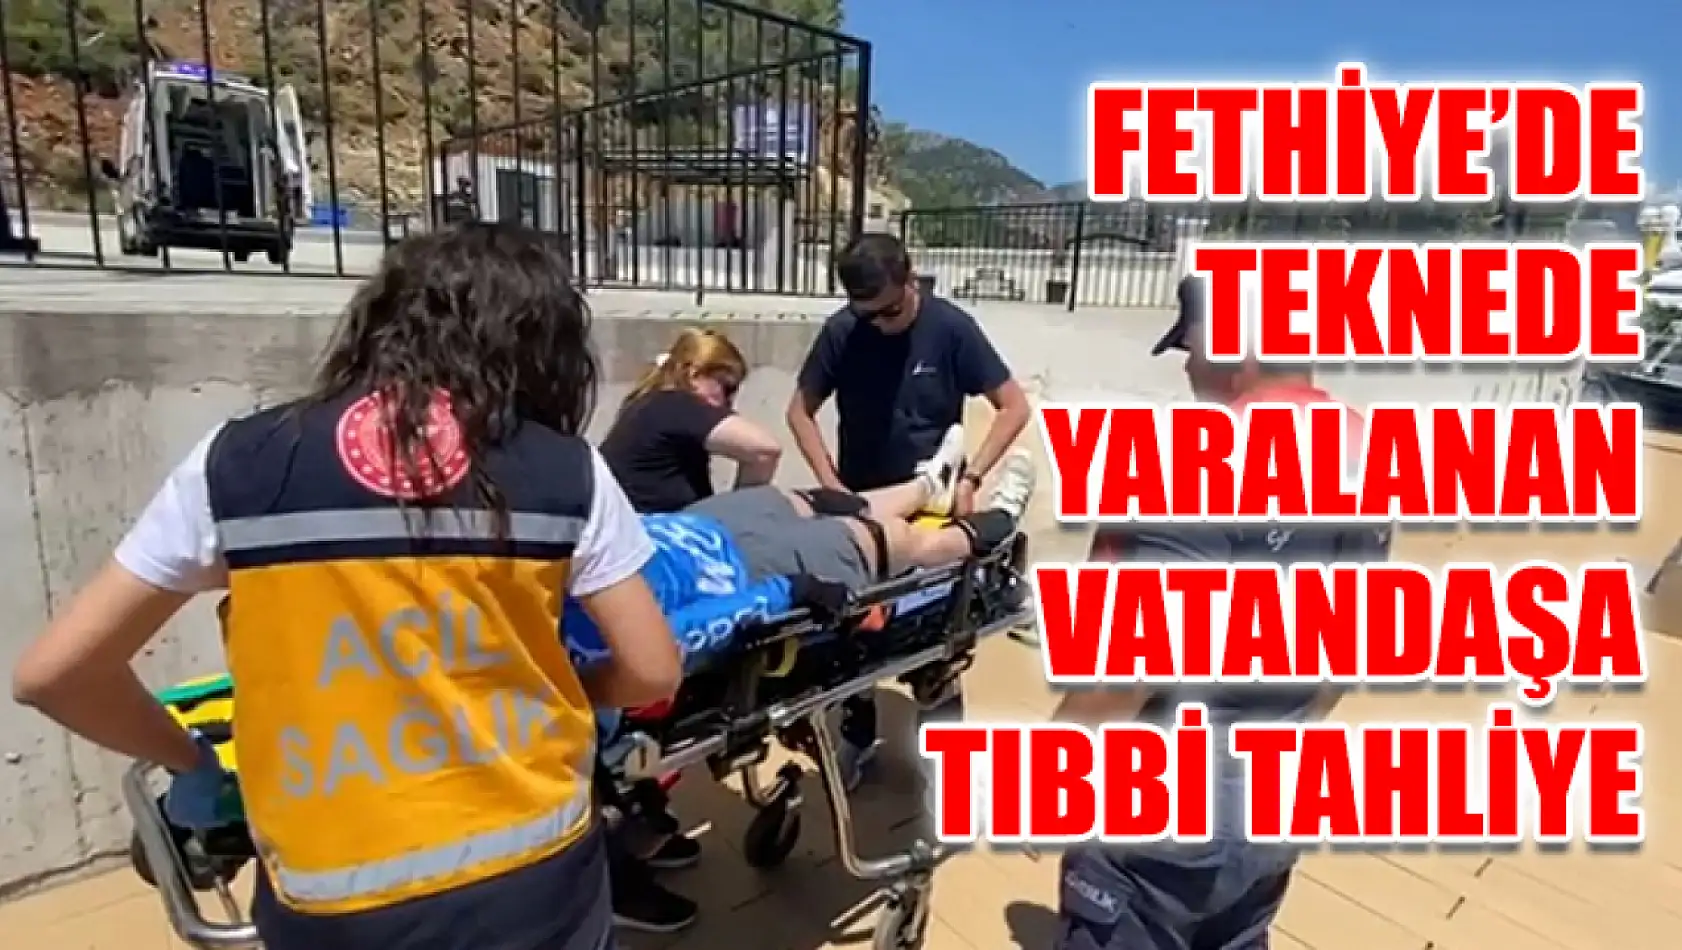 Fethiye'de Teknede Yaralanan Vatandaşa Tıbbi Tahliye